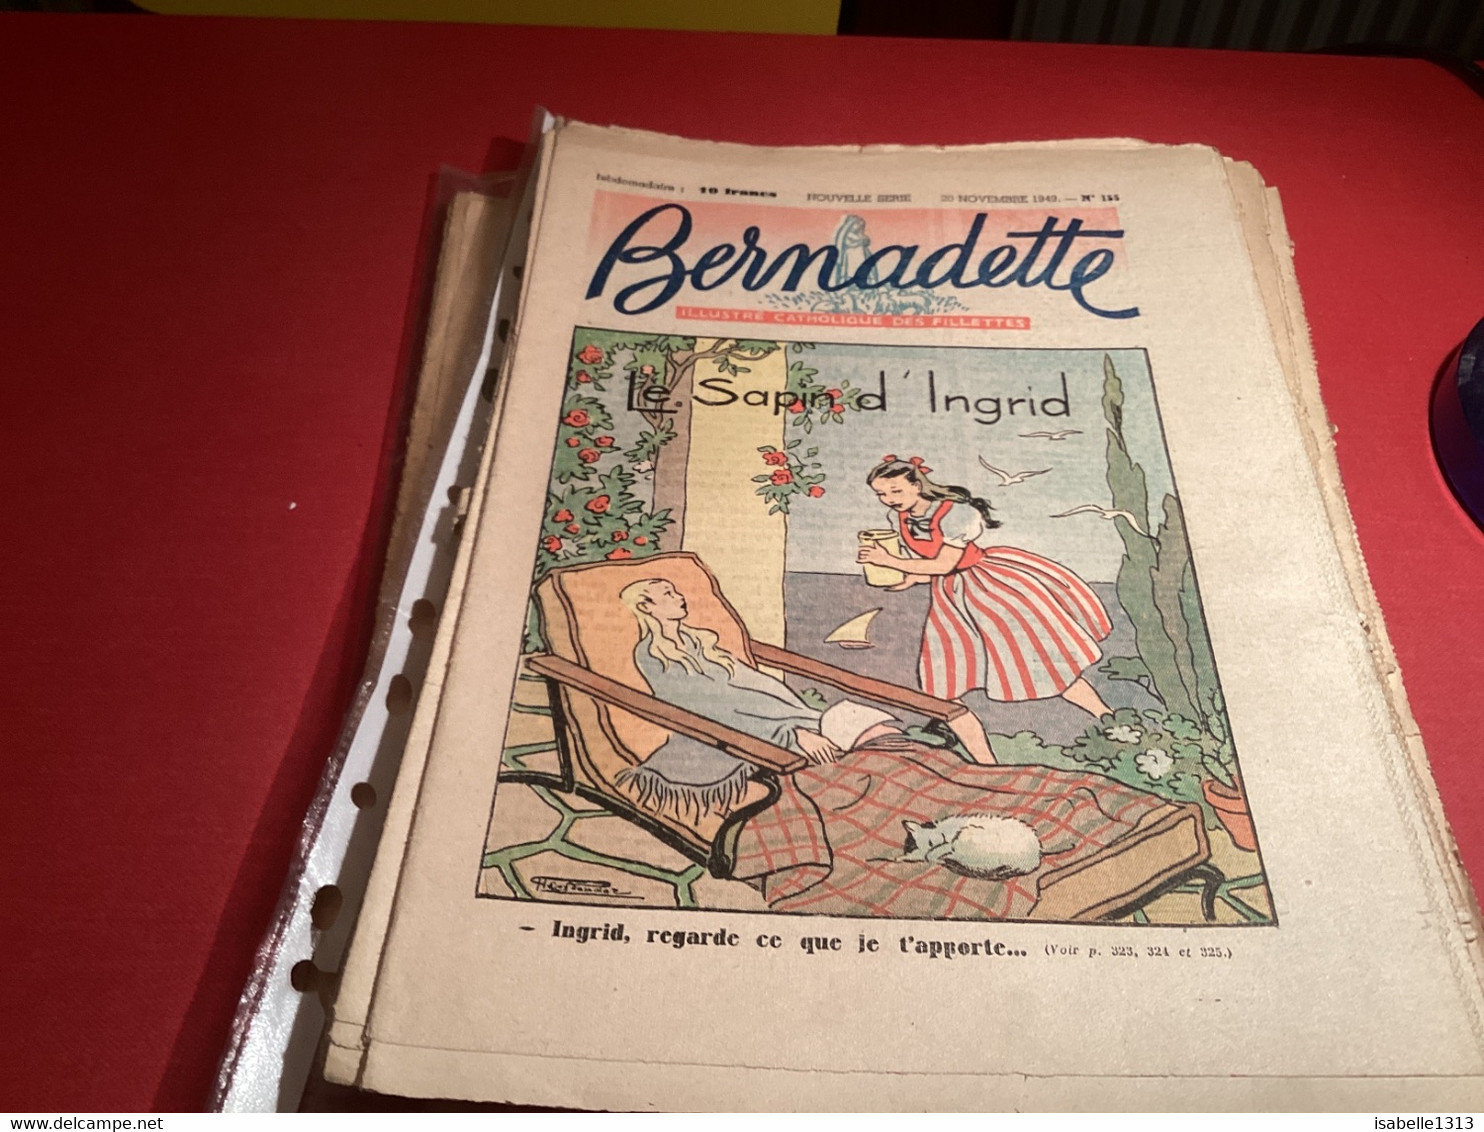 Bernadette Revue Hebdomadaire Illustrée Rare 1950 Numéro 155 Le Sapin De Ingrid - Bernadette